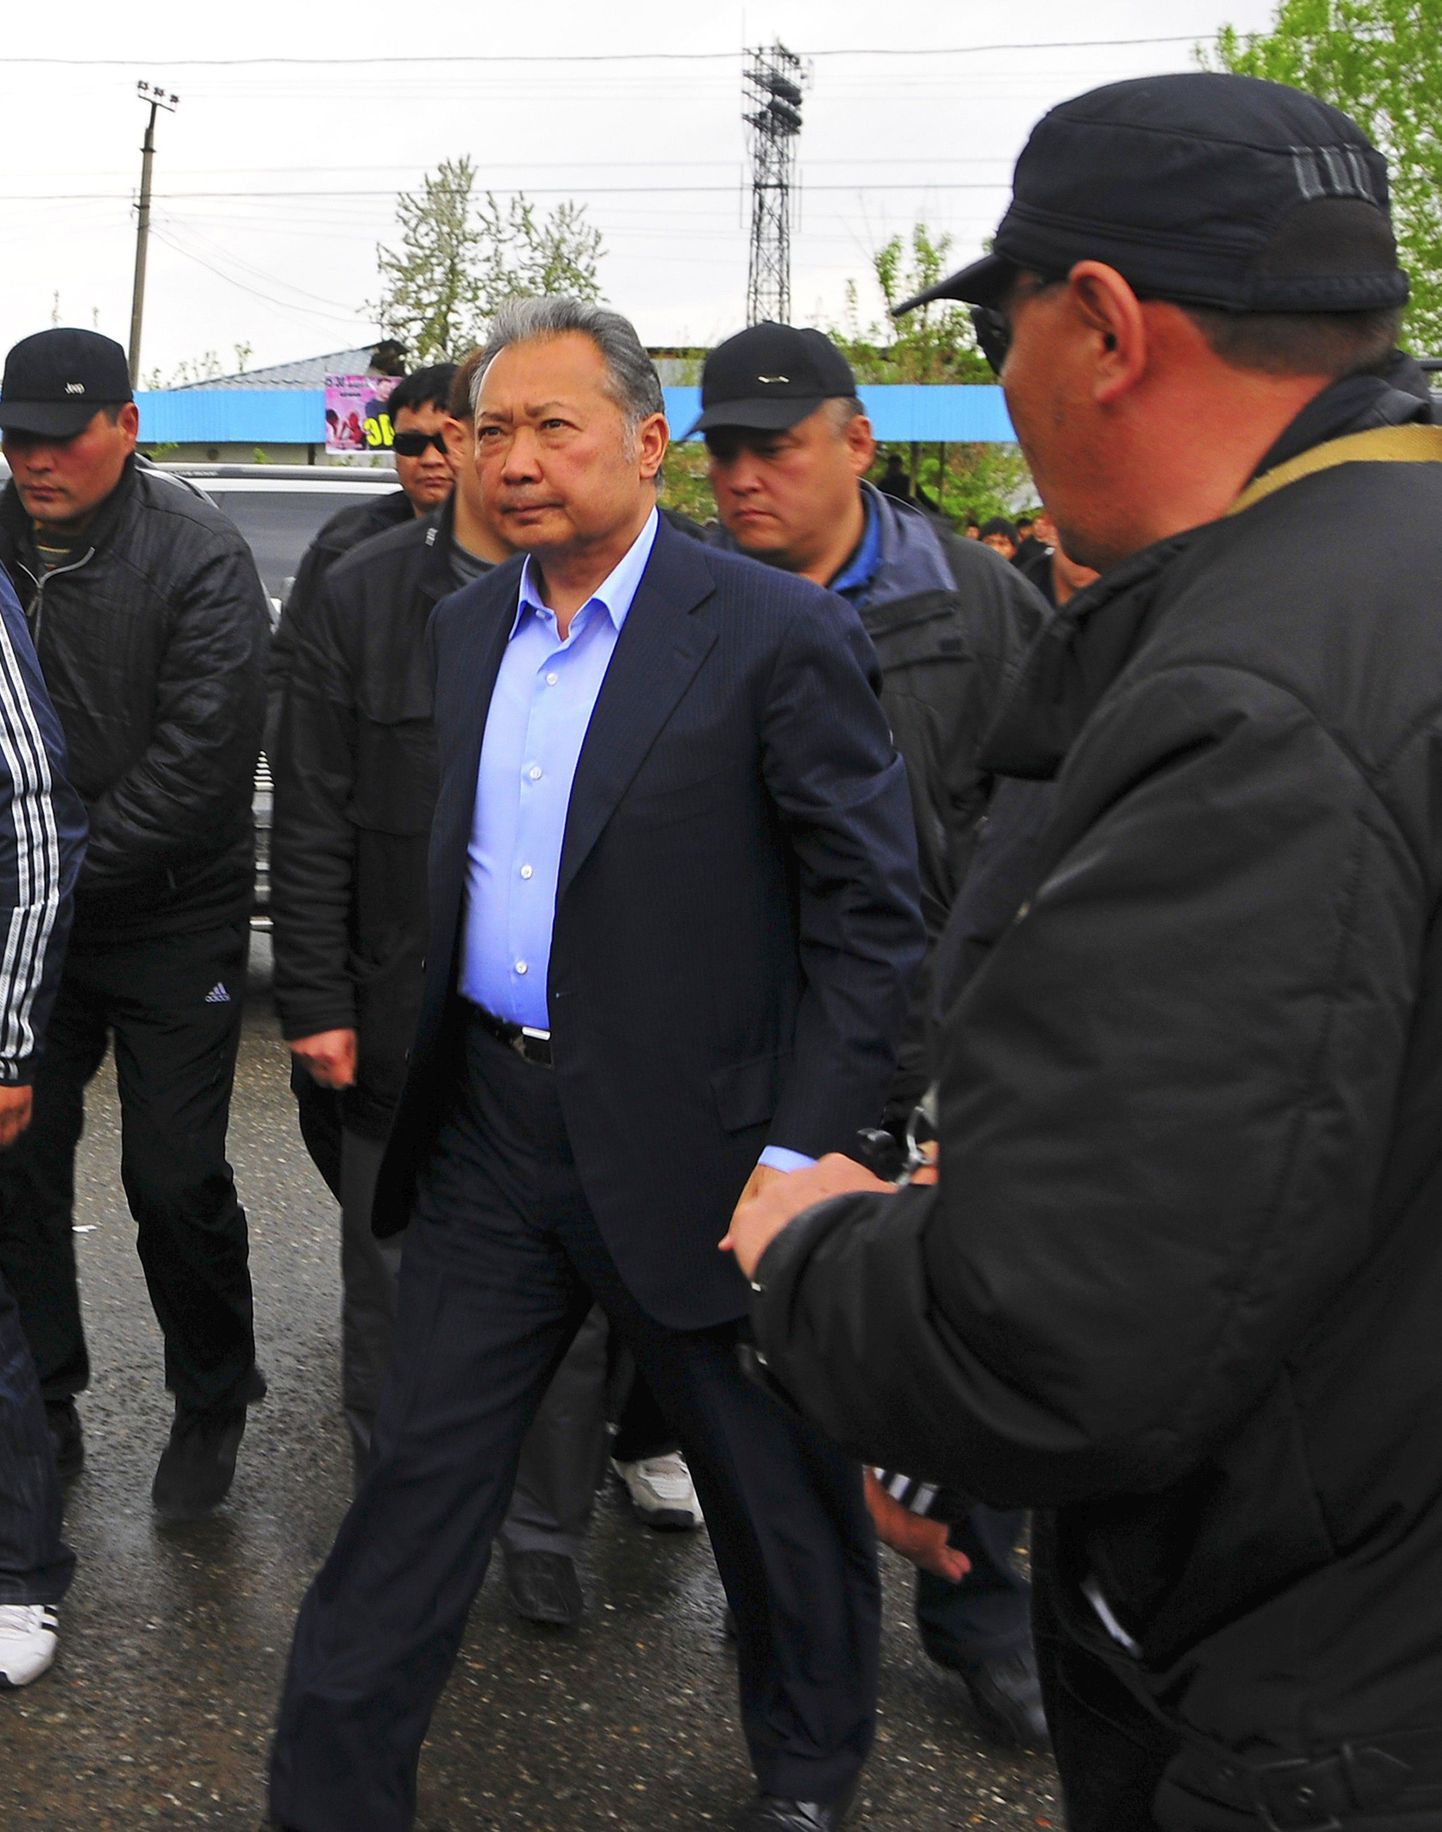 Lisaks Kõrgõzstani ekspresidendile Kurmanbek Bakijevile (keskel) varjab end Minskis ka tema vend Žanõš.